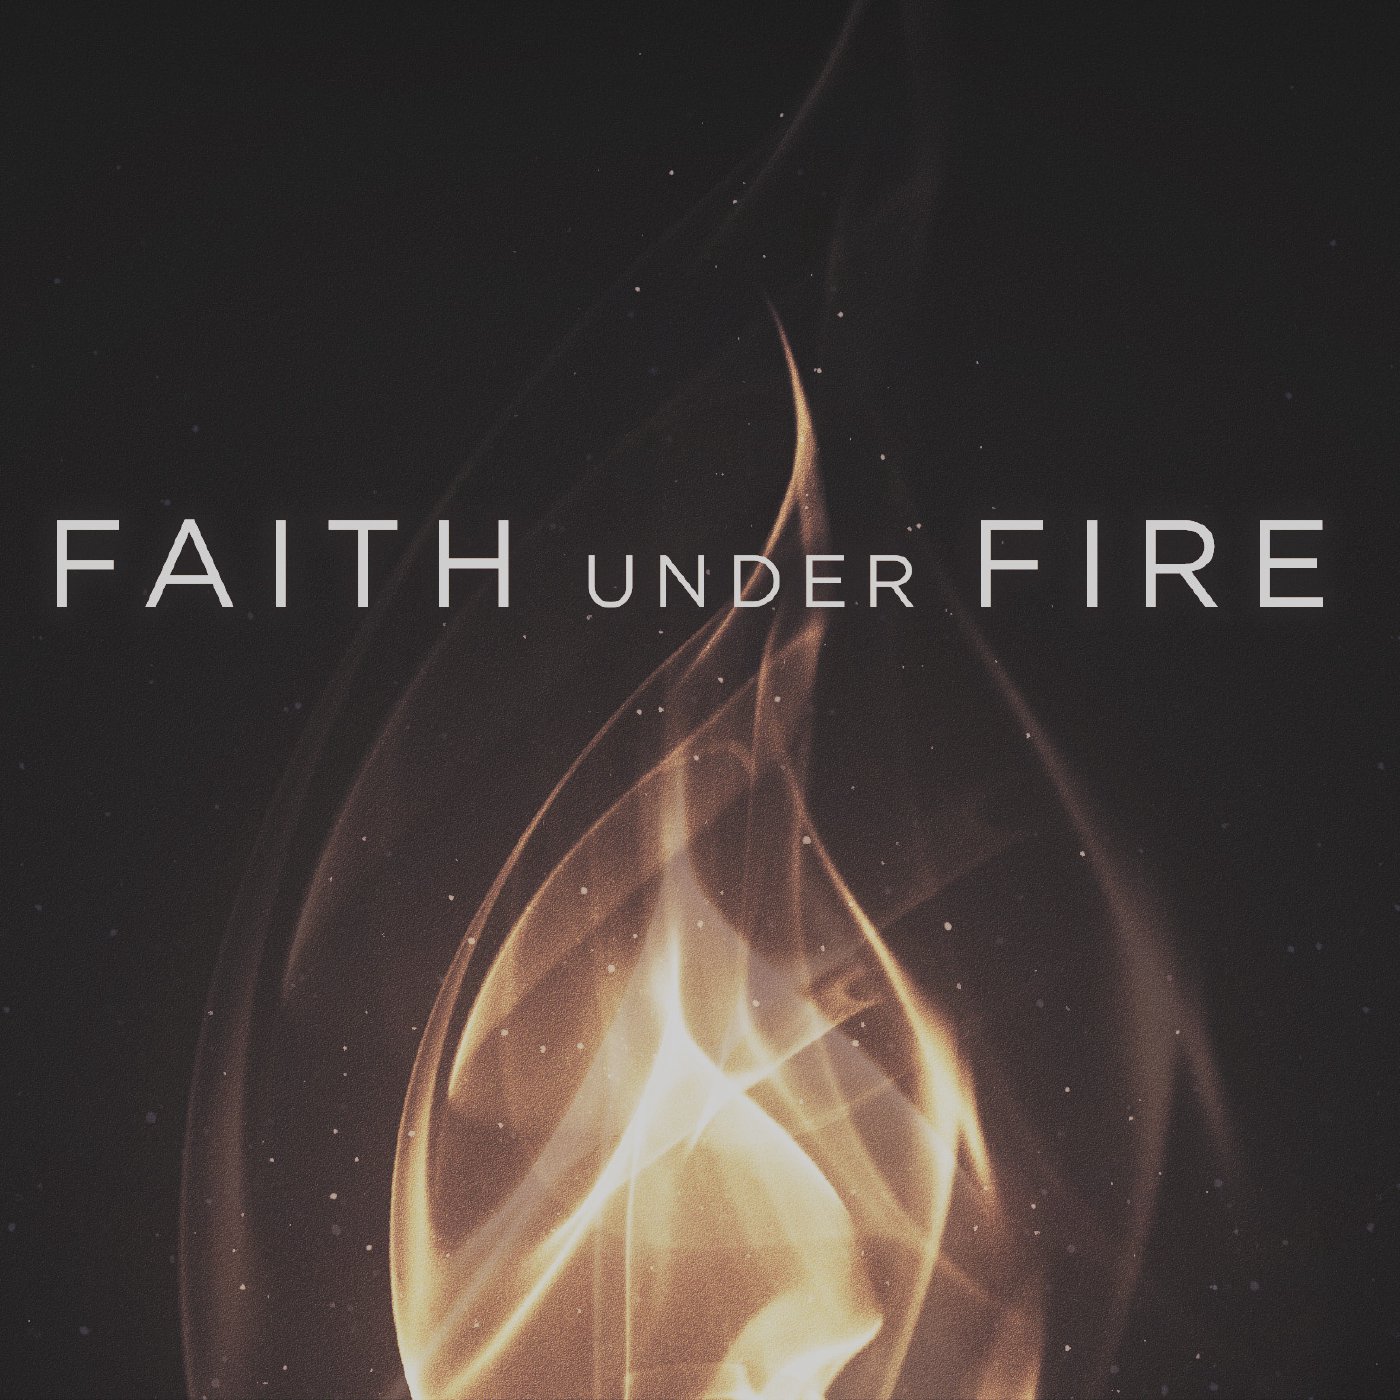 Faith Tested by Fire